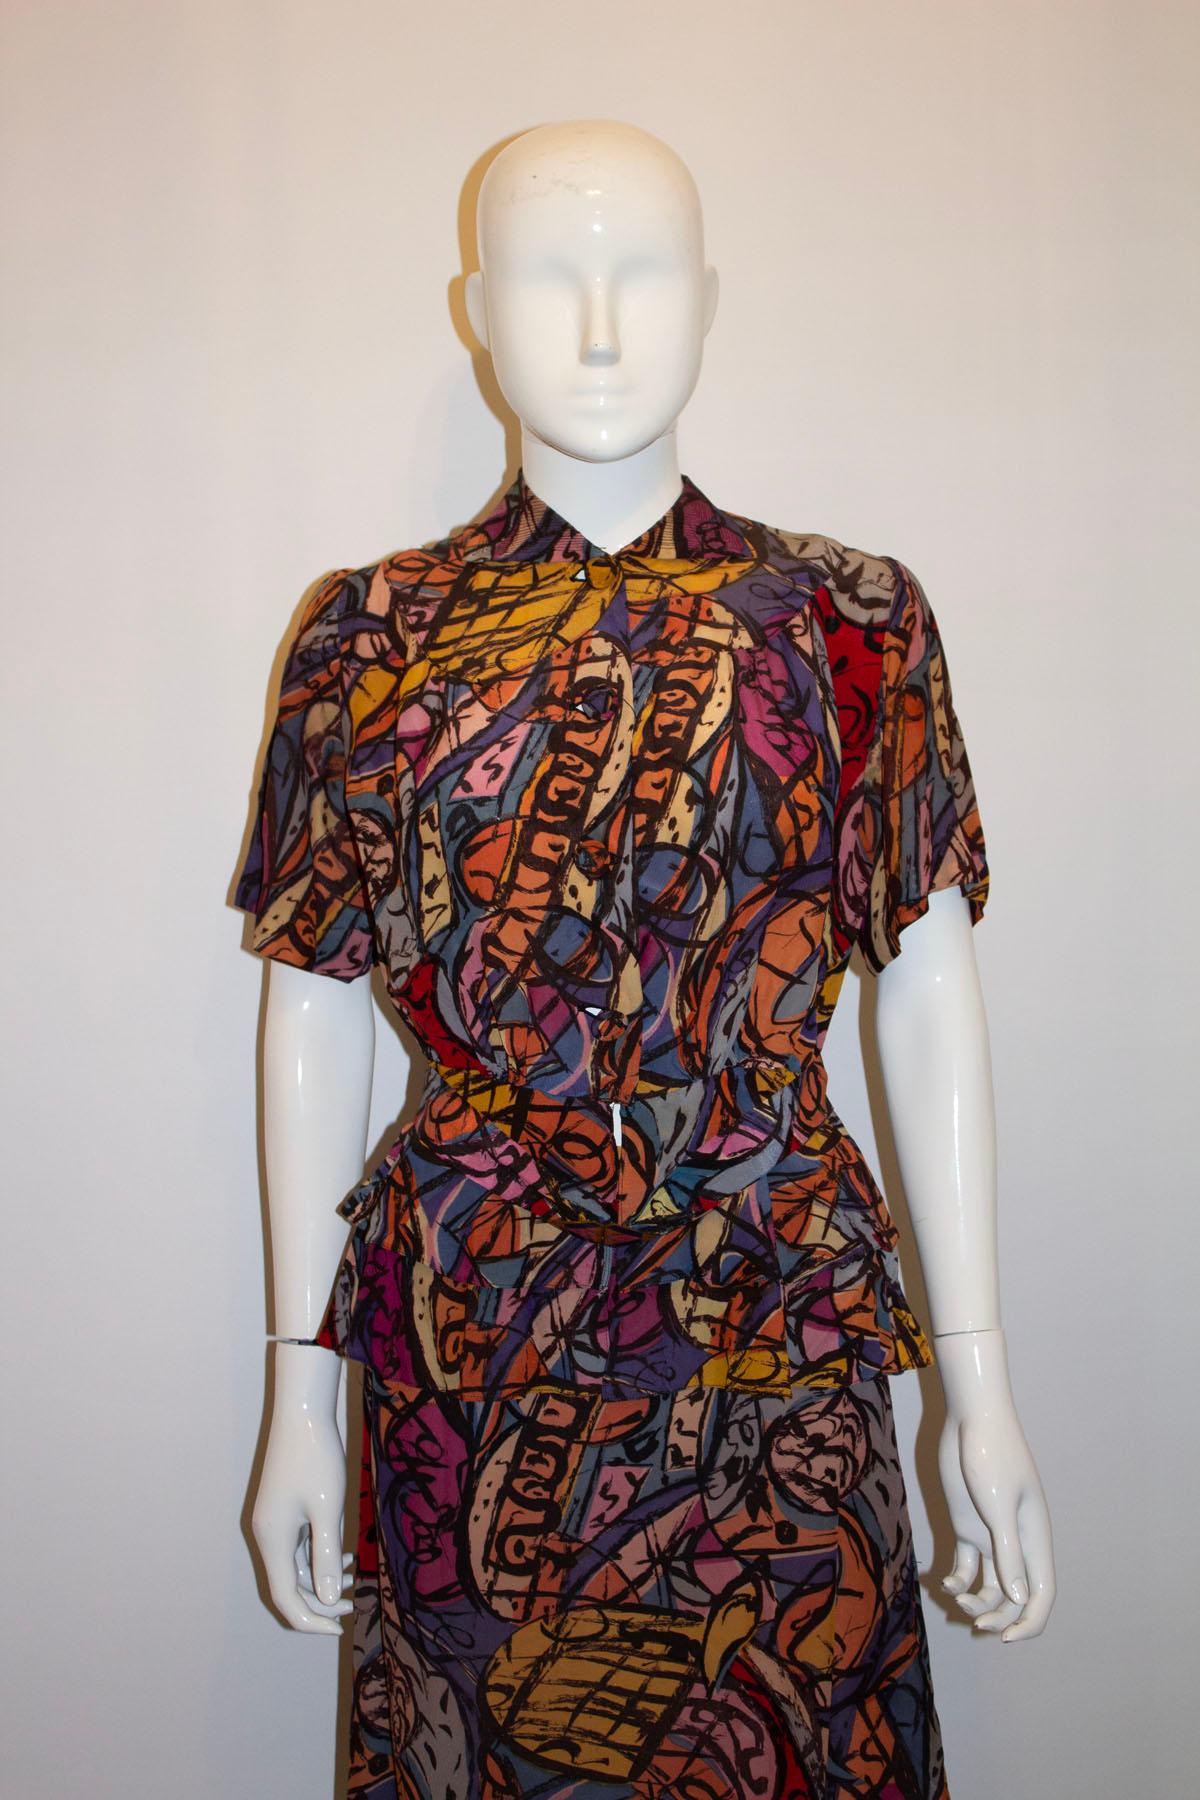 Un tailleur jupe vintage des années 1940 qui fait tourner les têtes. Le costume est composé d'une magnifique impression de violet, de rose et d'orange. La jupe est en ligne A, et la veste a une ouverture à boutons en tissu, un empiècement et un